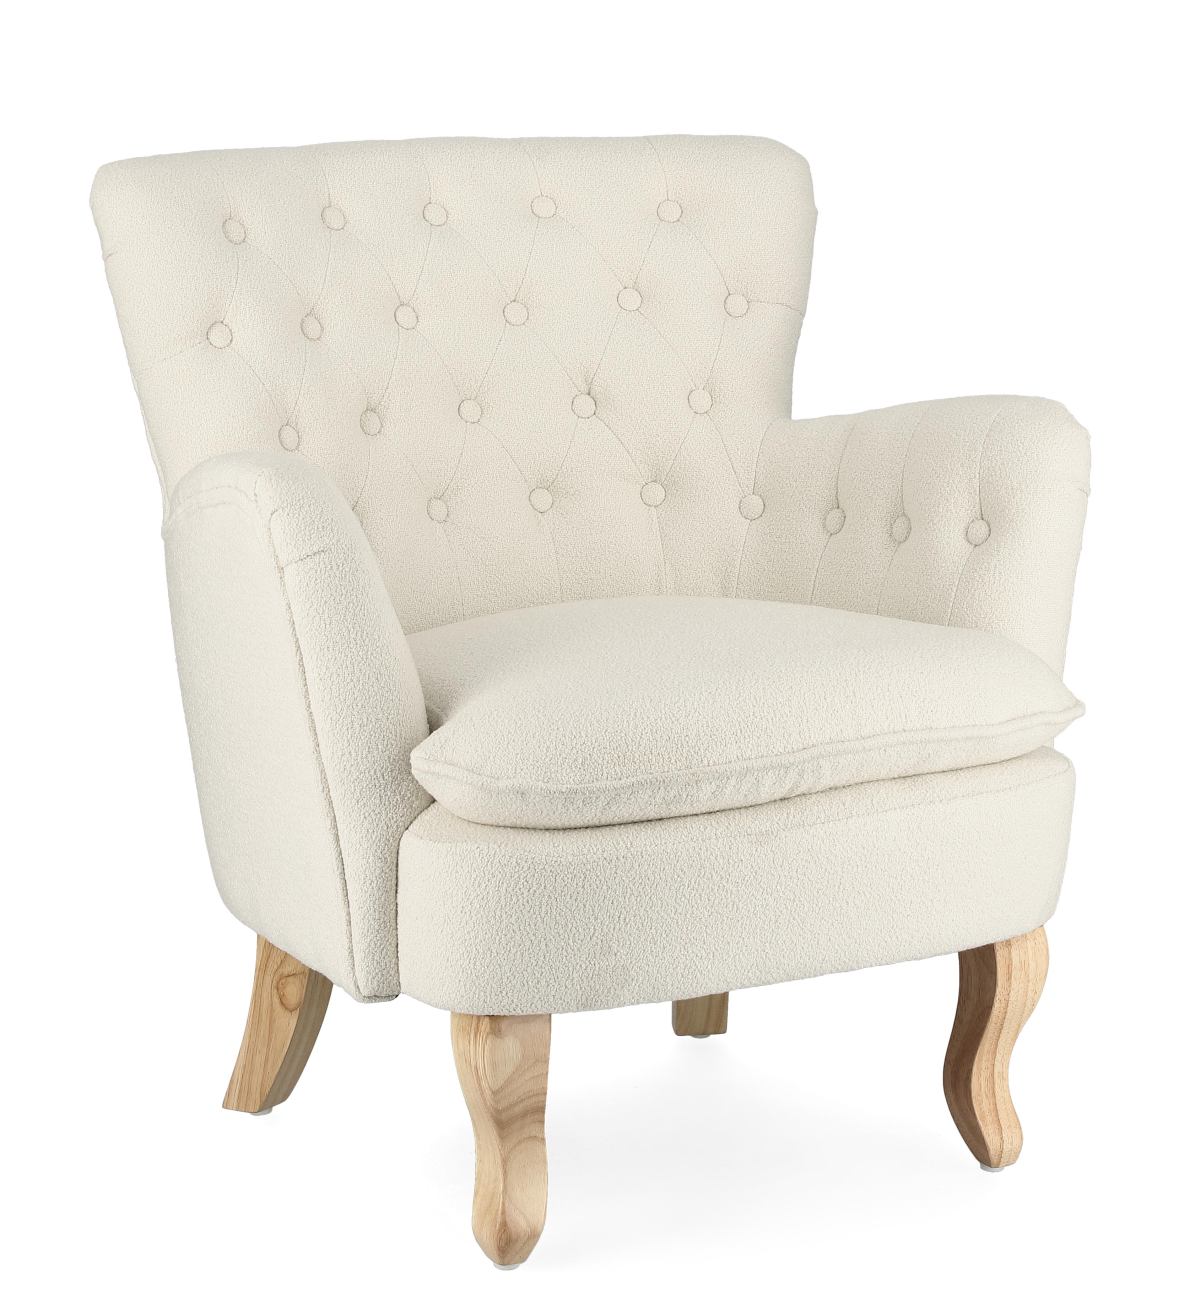 Der Sessel Orlins überzeugt mit seinem modernen Stil. Gefertigt wurde er aus Bouclè-Stoff, welcher einen Creme Farbton besitzt. Das Gestell ist aus Kiefernholz und hat eine natürliche Farbe. Der Sessel verfügt über eine Armlehne.